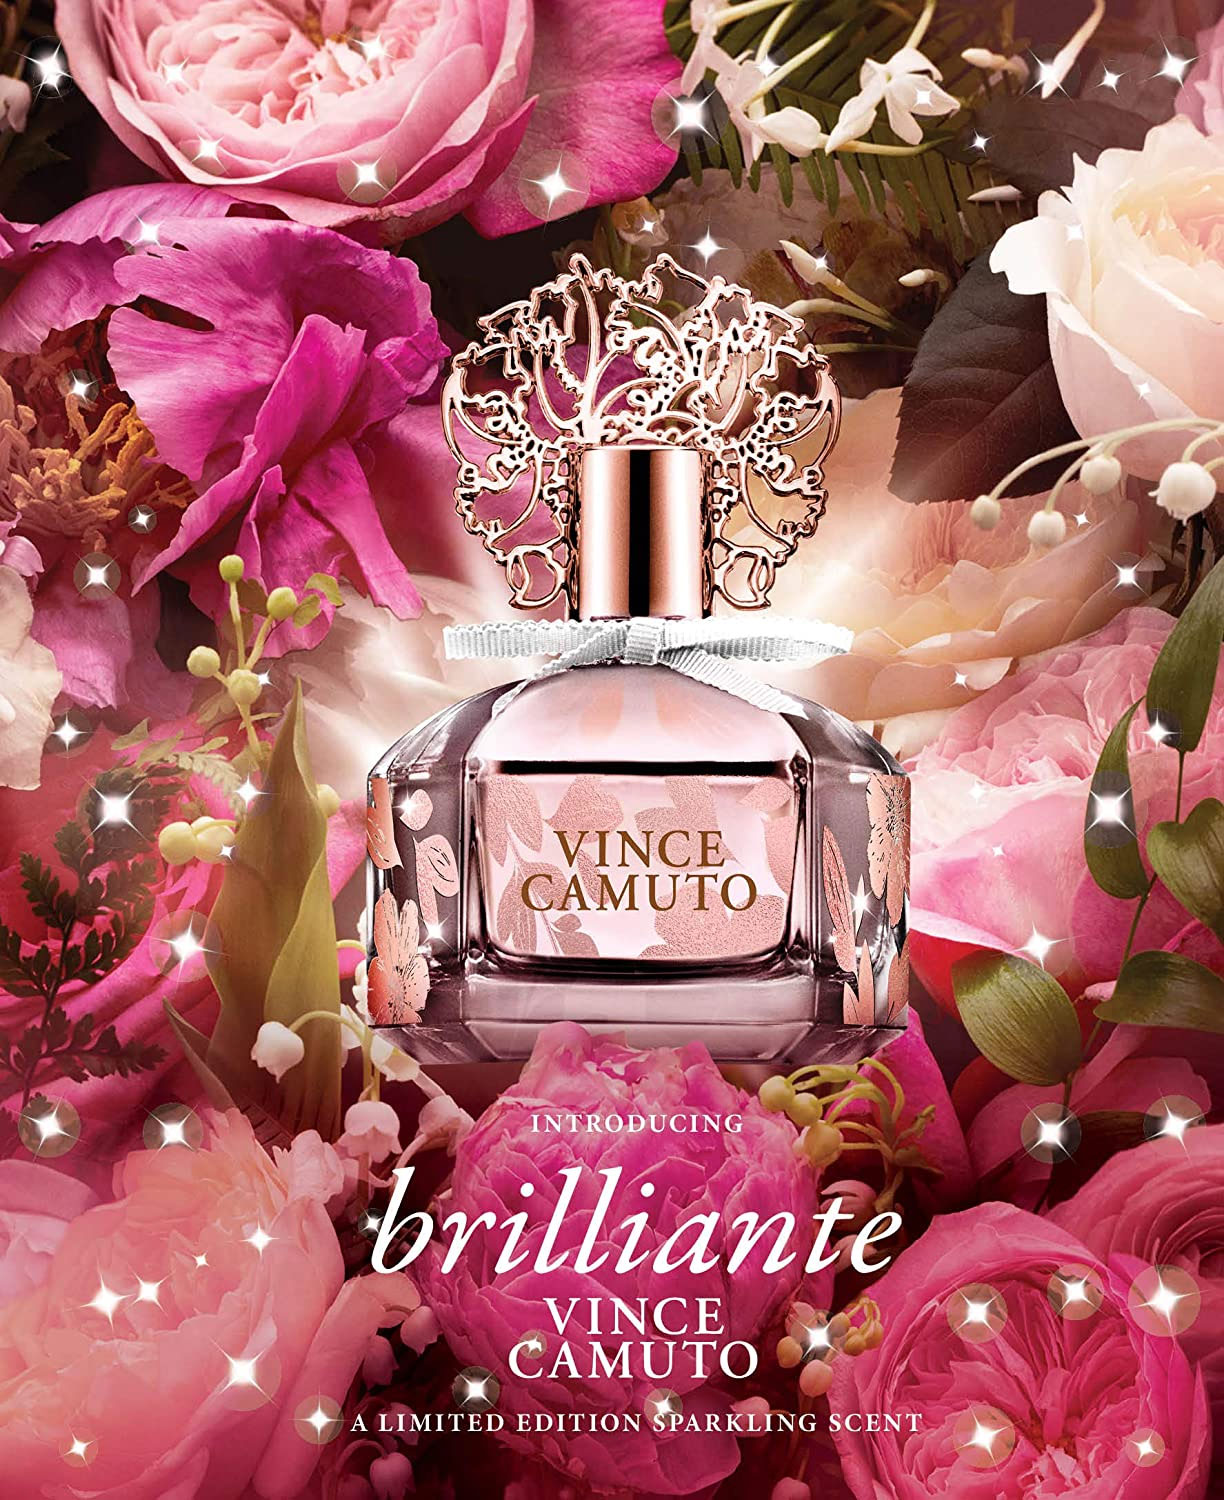 Vince Camuto Brilliante Fragrance Ad